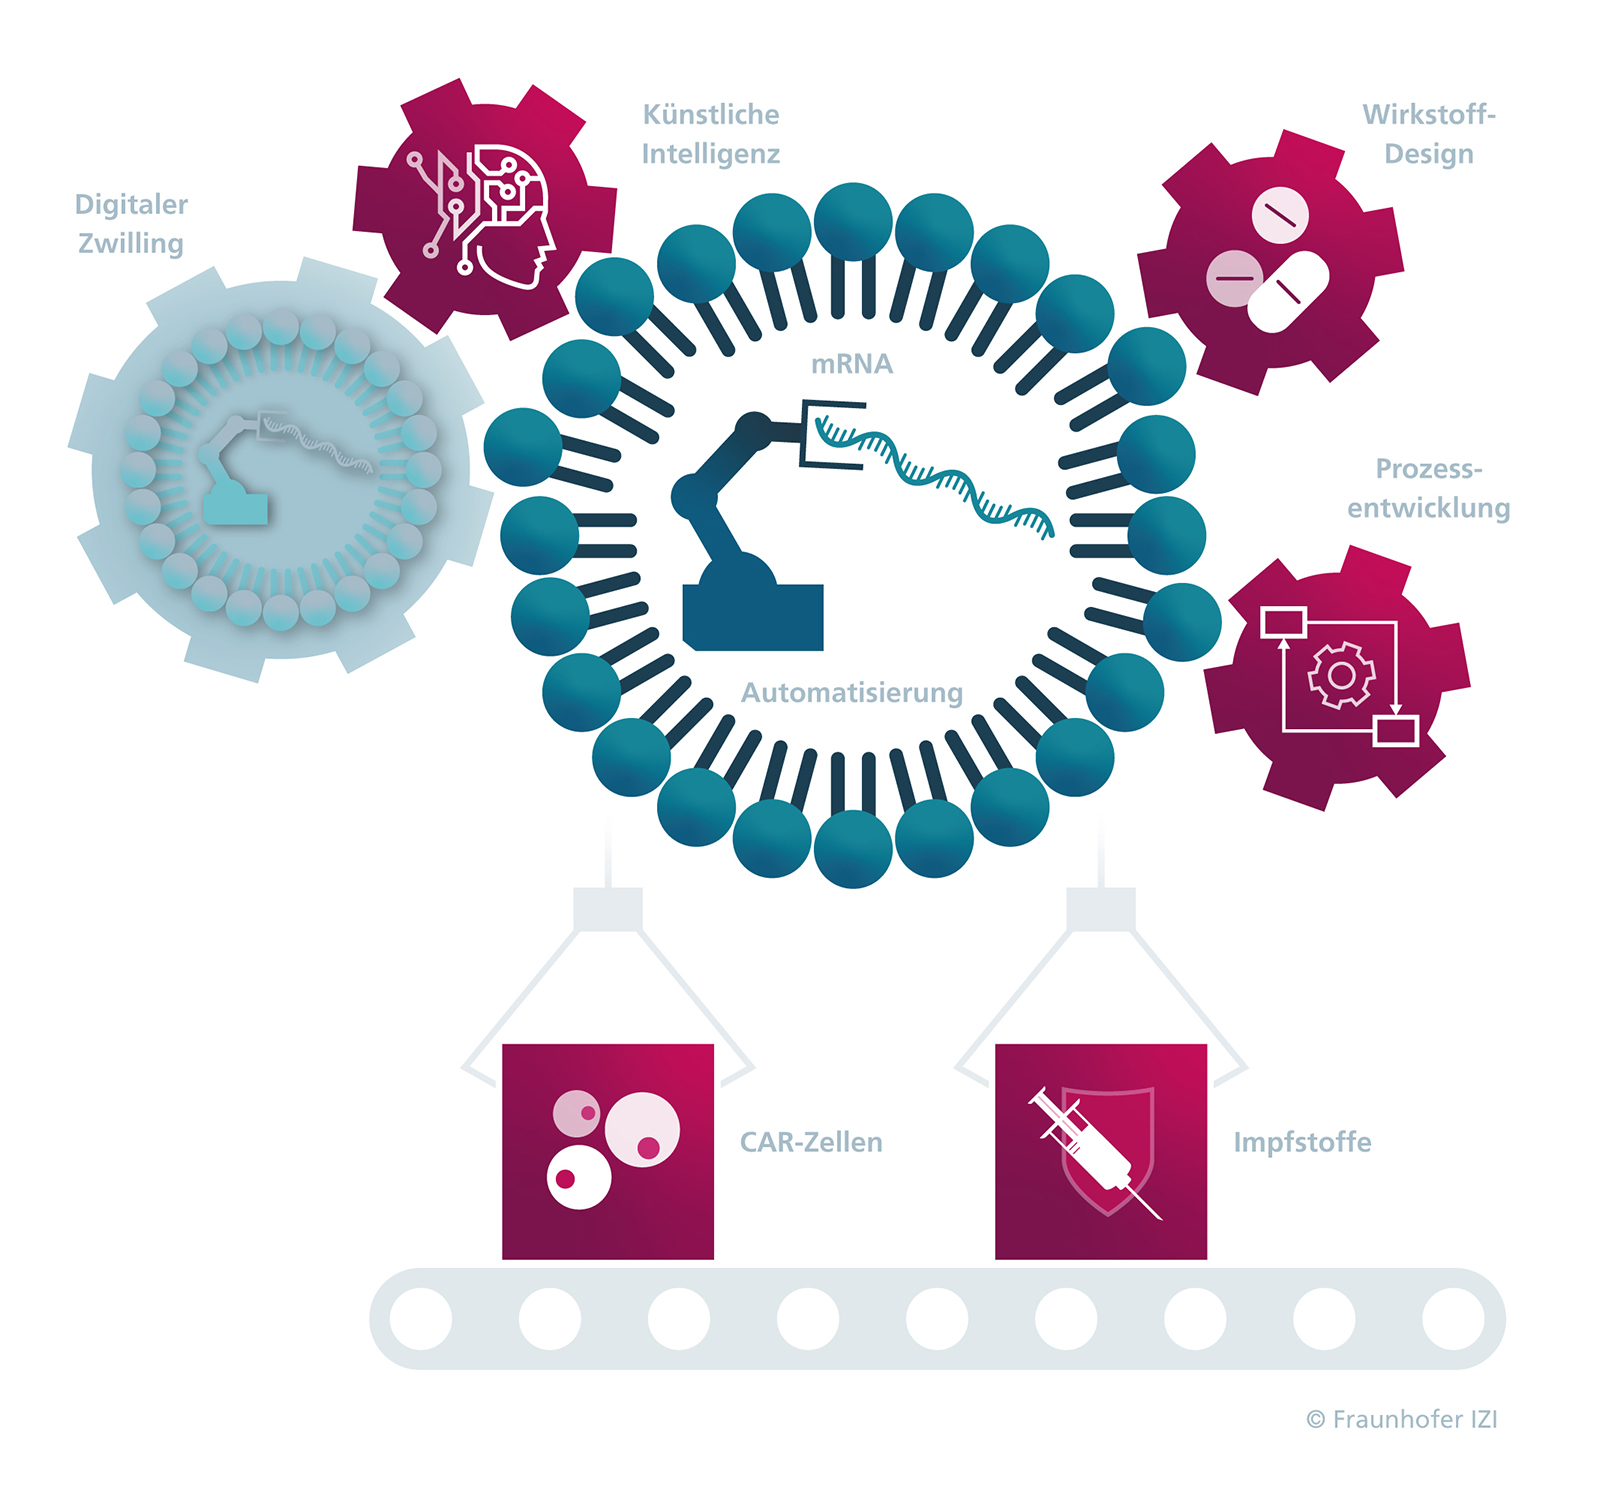 Automatisierte Produktionstechnologien mRNA-abgeleiteter Impfstoffe sowie von Zell- und Gentherapeutika.